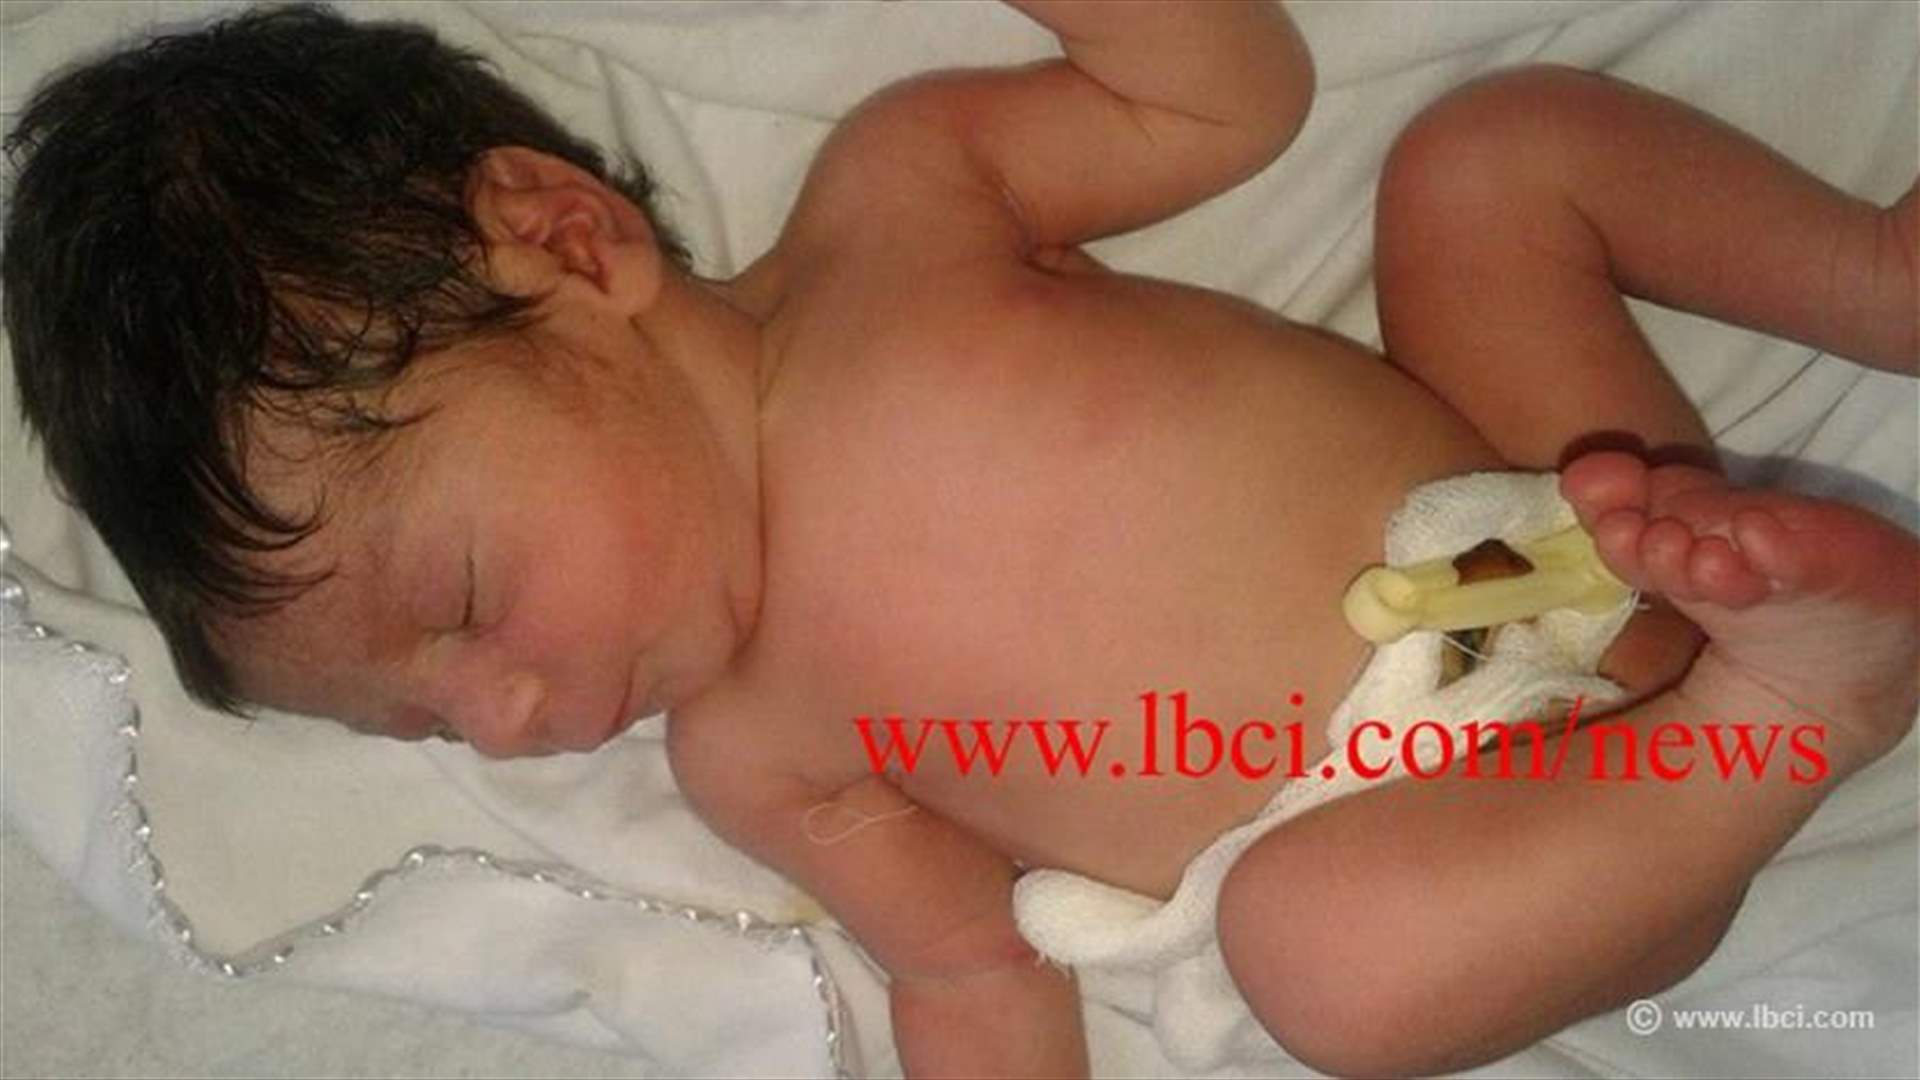 بالصور - طفل حديث الولادة قرب مستوعبات النفايات